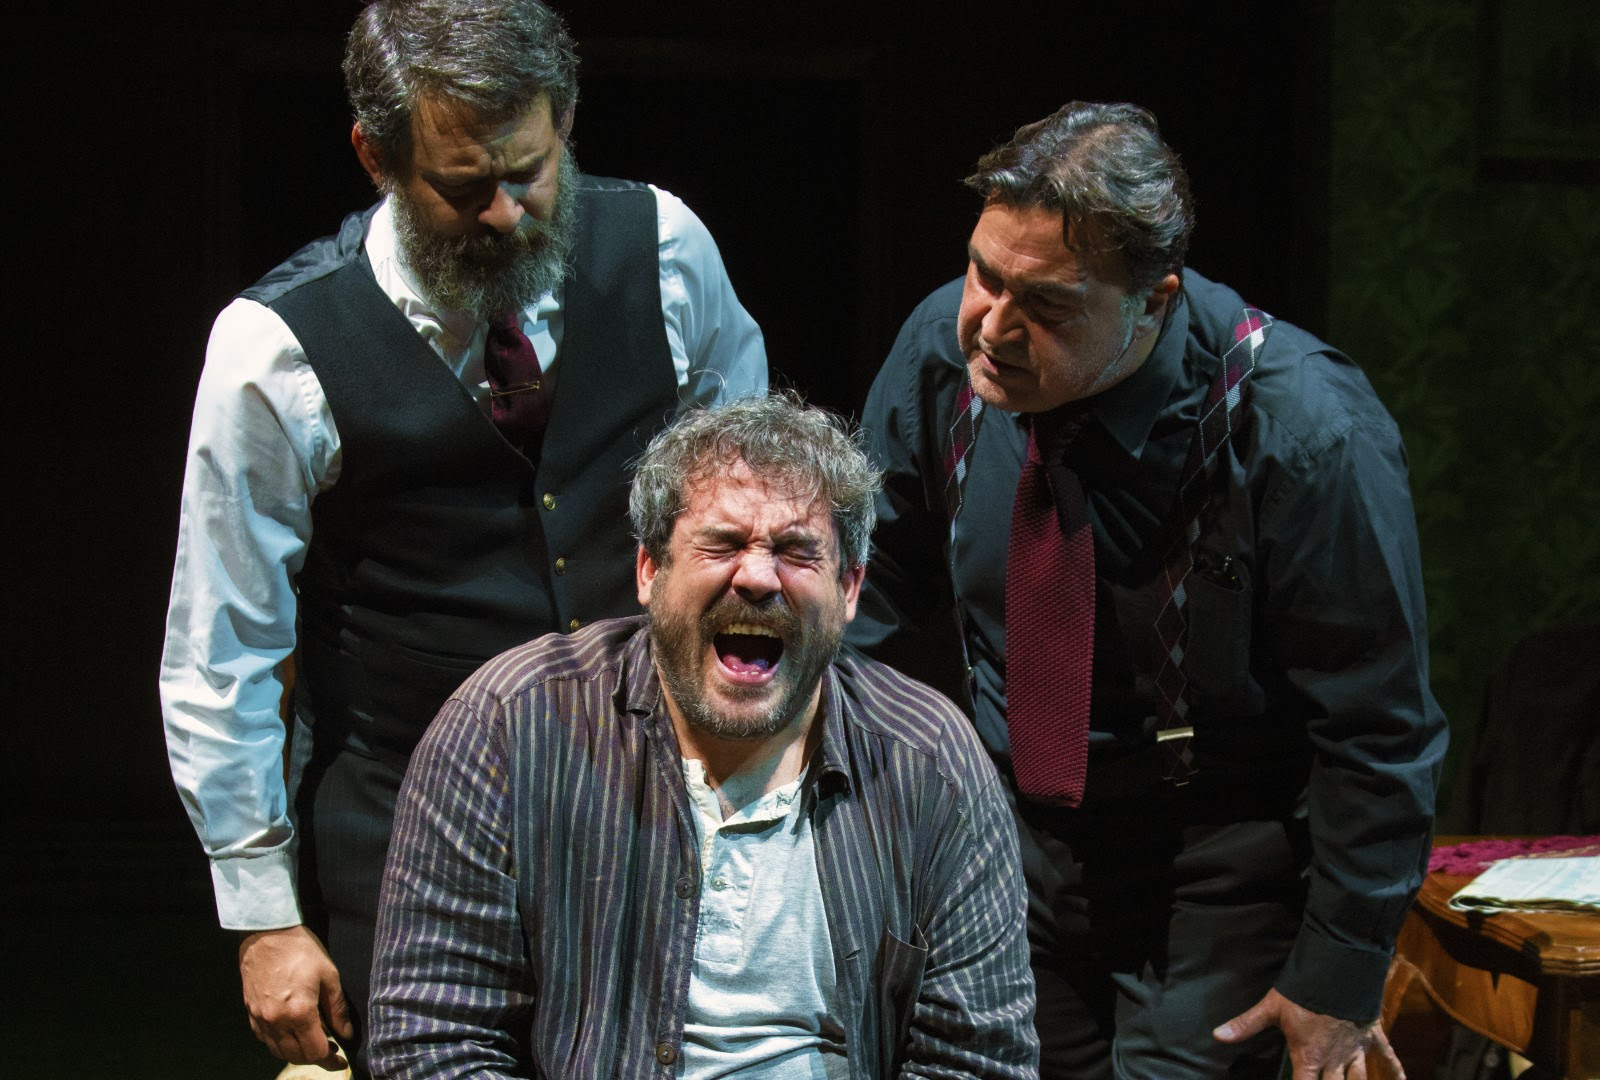 Τρεις άνδρες ηθοποιοί σε σκηνή θεάτρου - από τη θεατρική παράσταση «Πάρτι γενεθλίων» του Χάρολντ Πίντερ στο Ίδρυμα Κακογιάννη